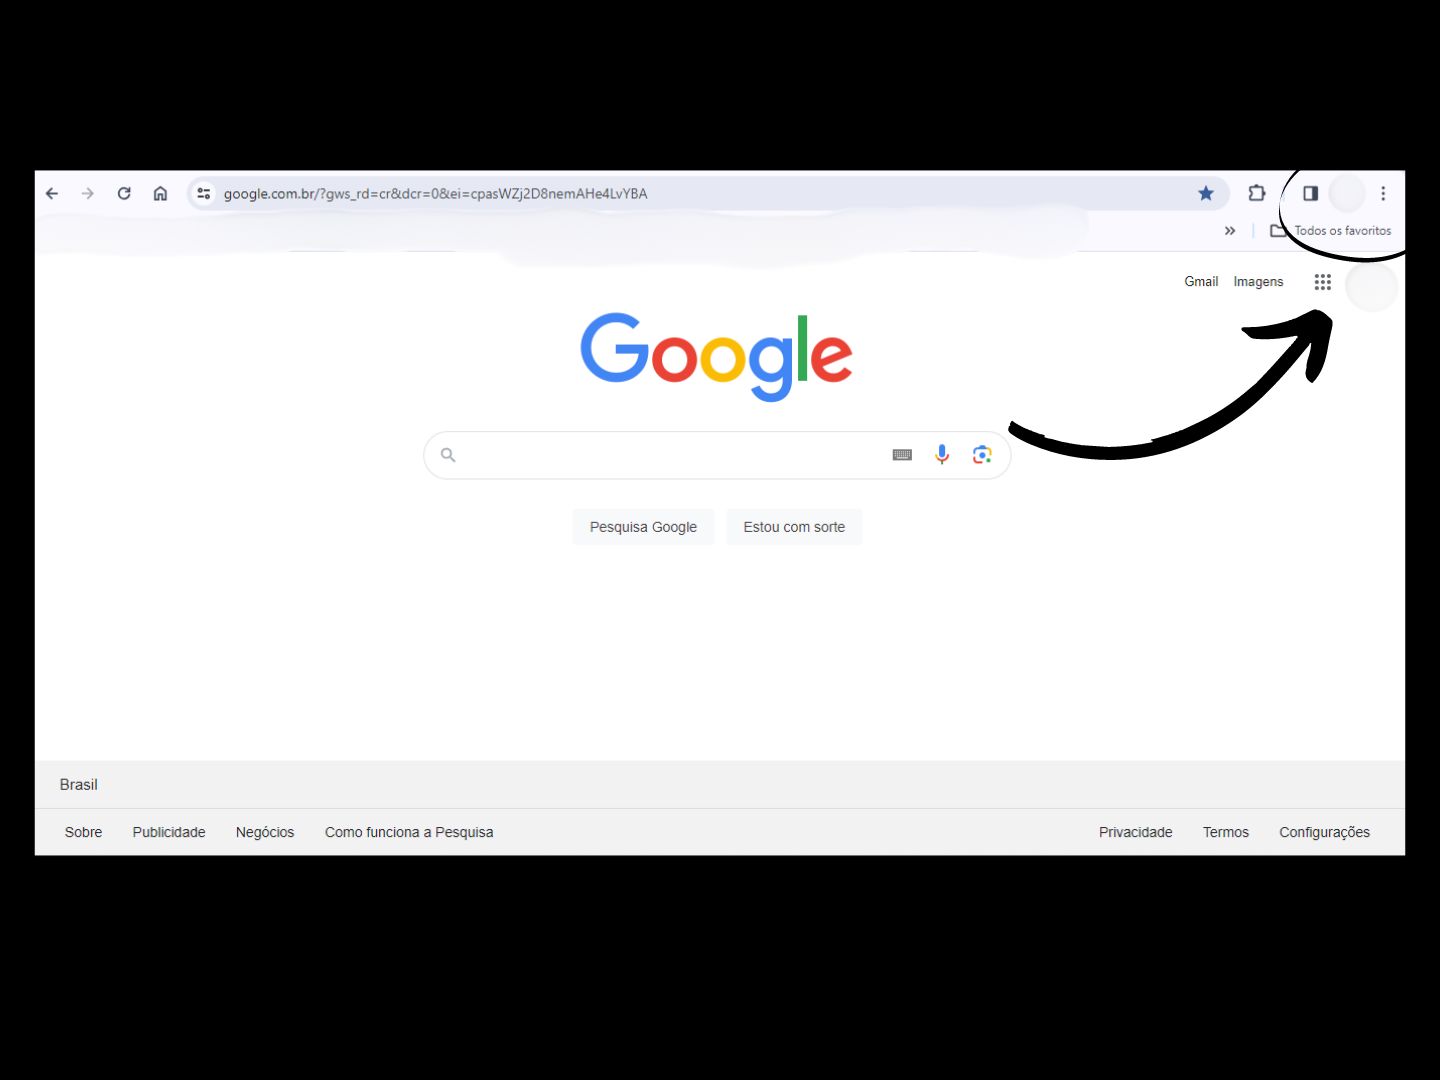 Imagem mostra seta apontando para onde você deve clicar para alterar o tema do Google